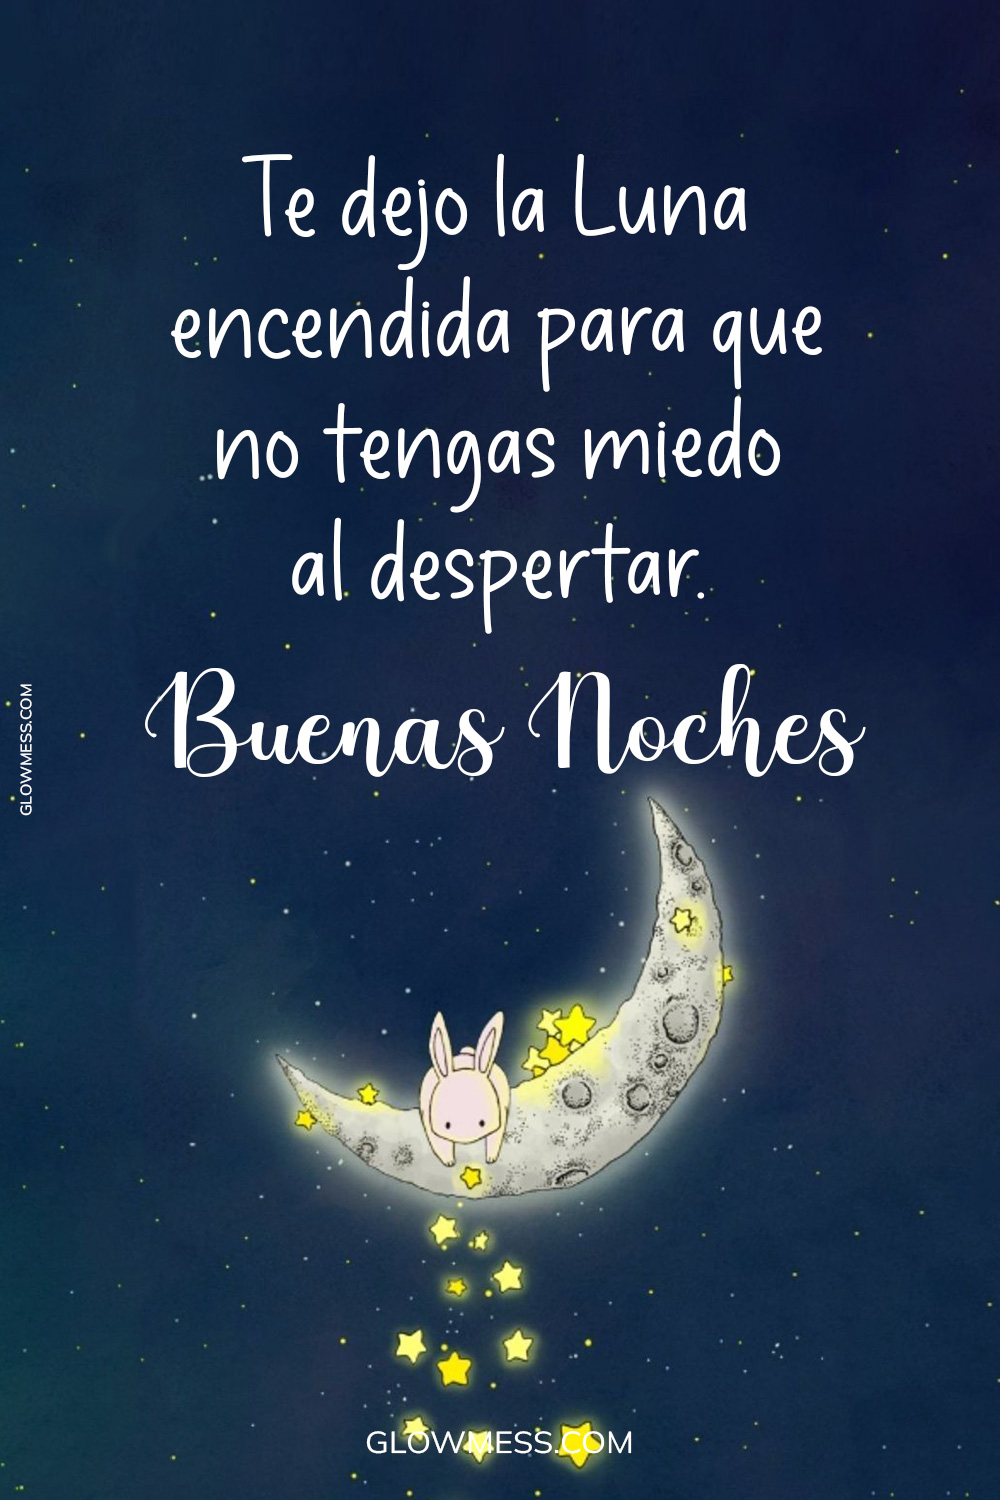 Buenas noches Luna 